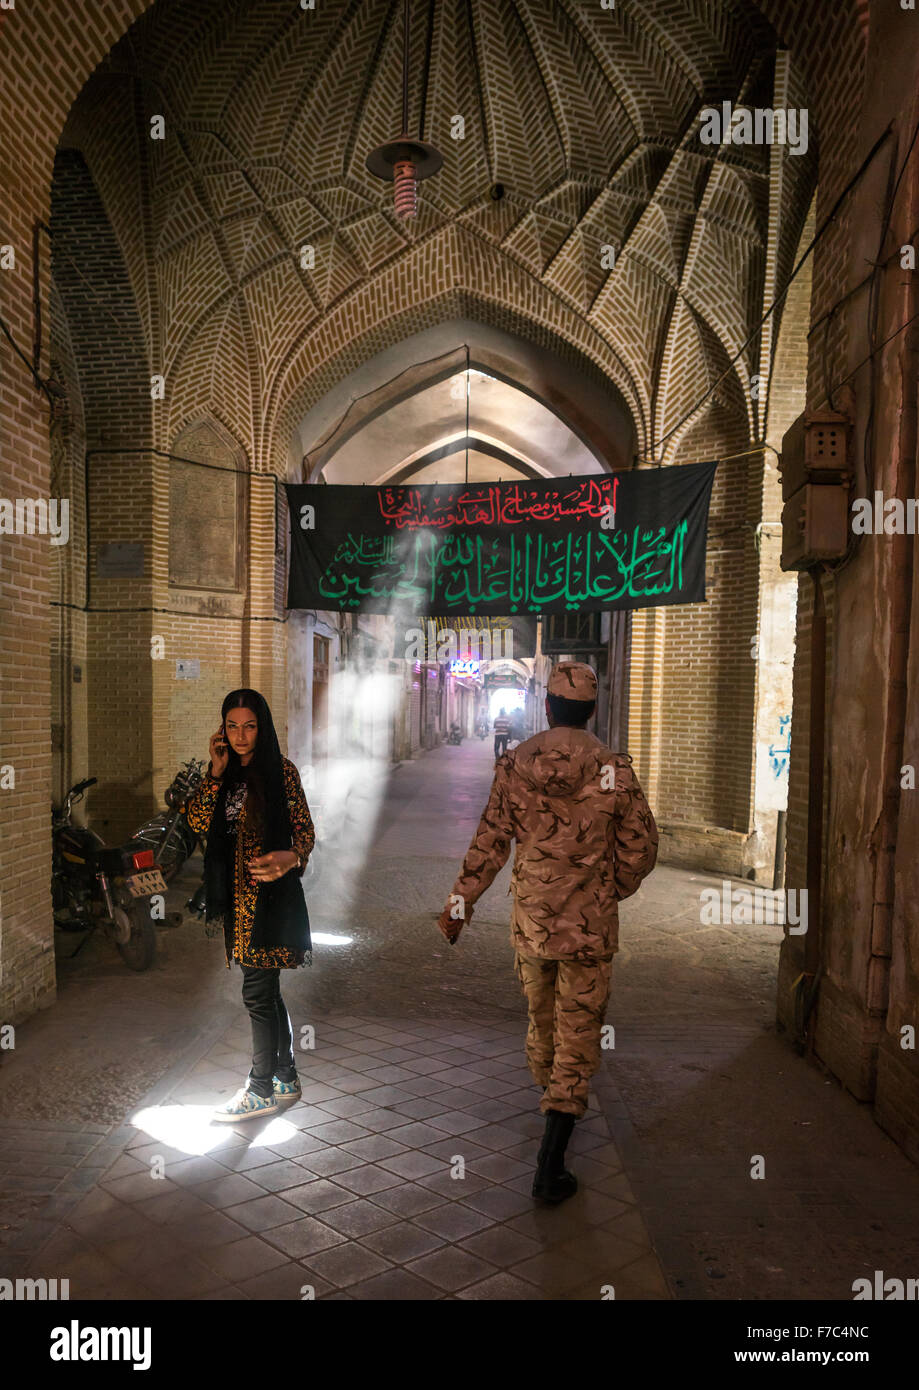 Femme et soldat dans un bazar, vide, la province de Yazd Yazd, Iran Banque D'Images